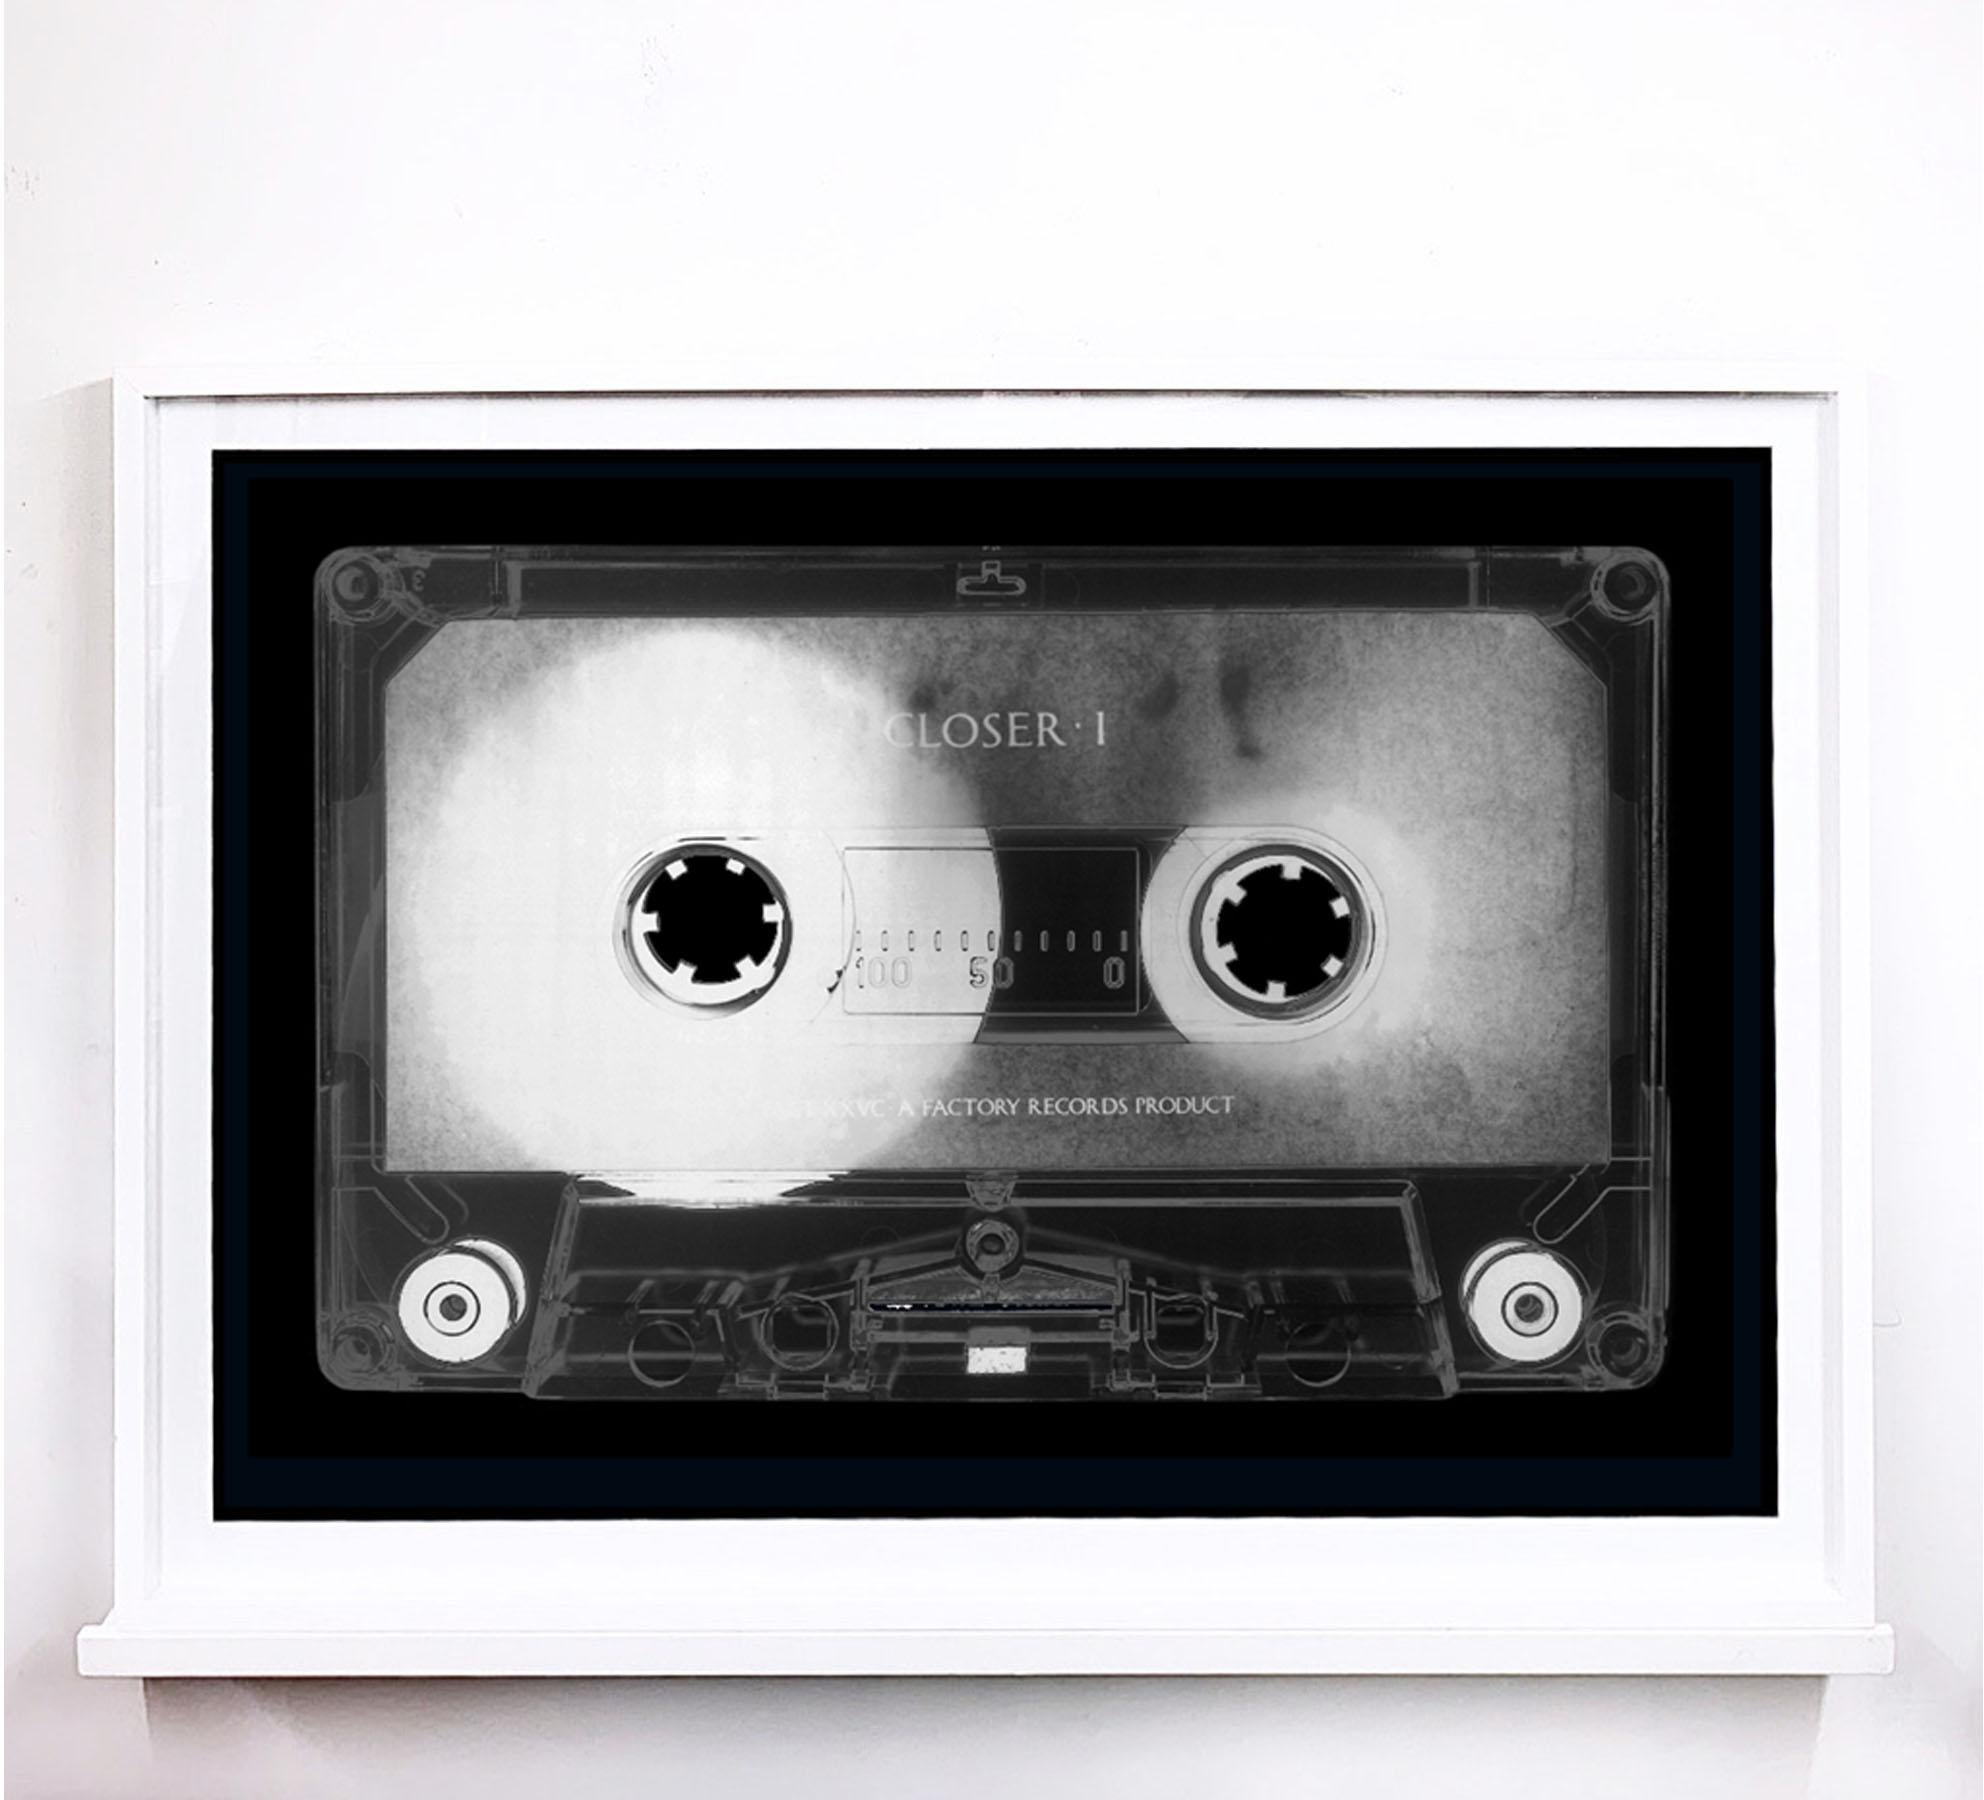 Tape-Kollektion, Produkt der 80er Jahre - Zeitgenössische Pop-Art-Farbfotografie – Photograph von Heidler & Heeps